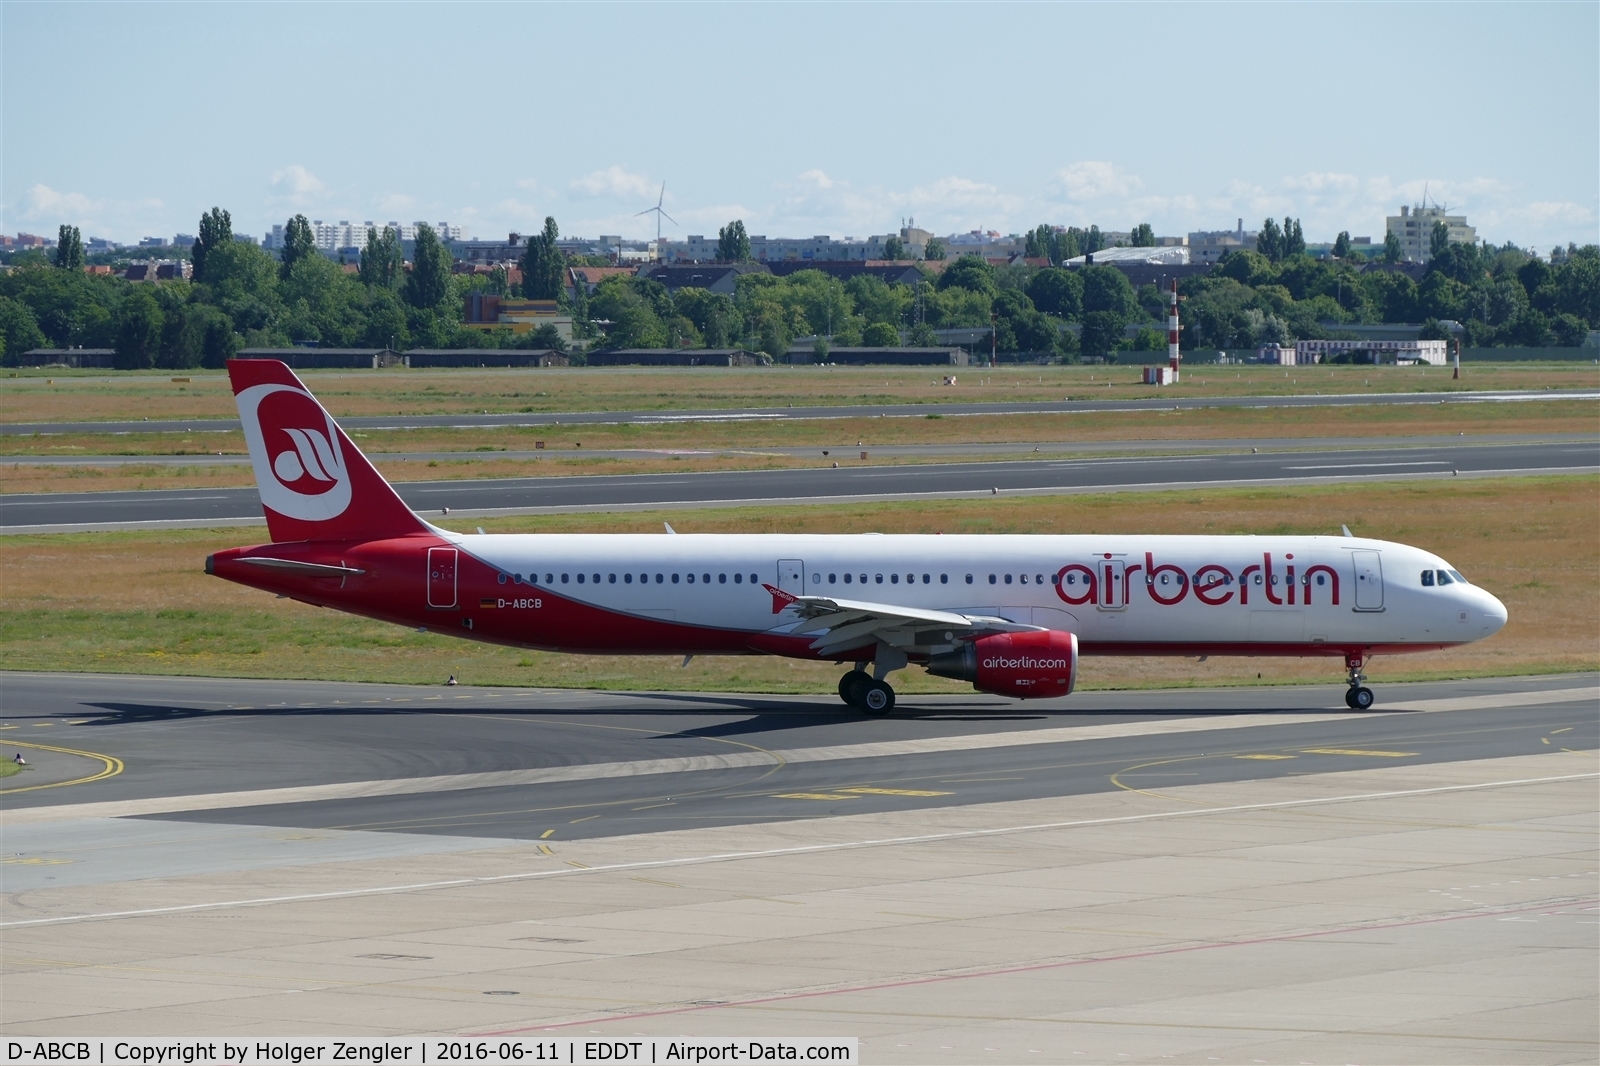 D-ABCB, 2008 Airbus A321-211 C/N 3749, TXL waving good bye tour no.4 since 2011